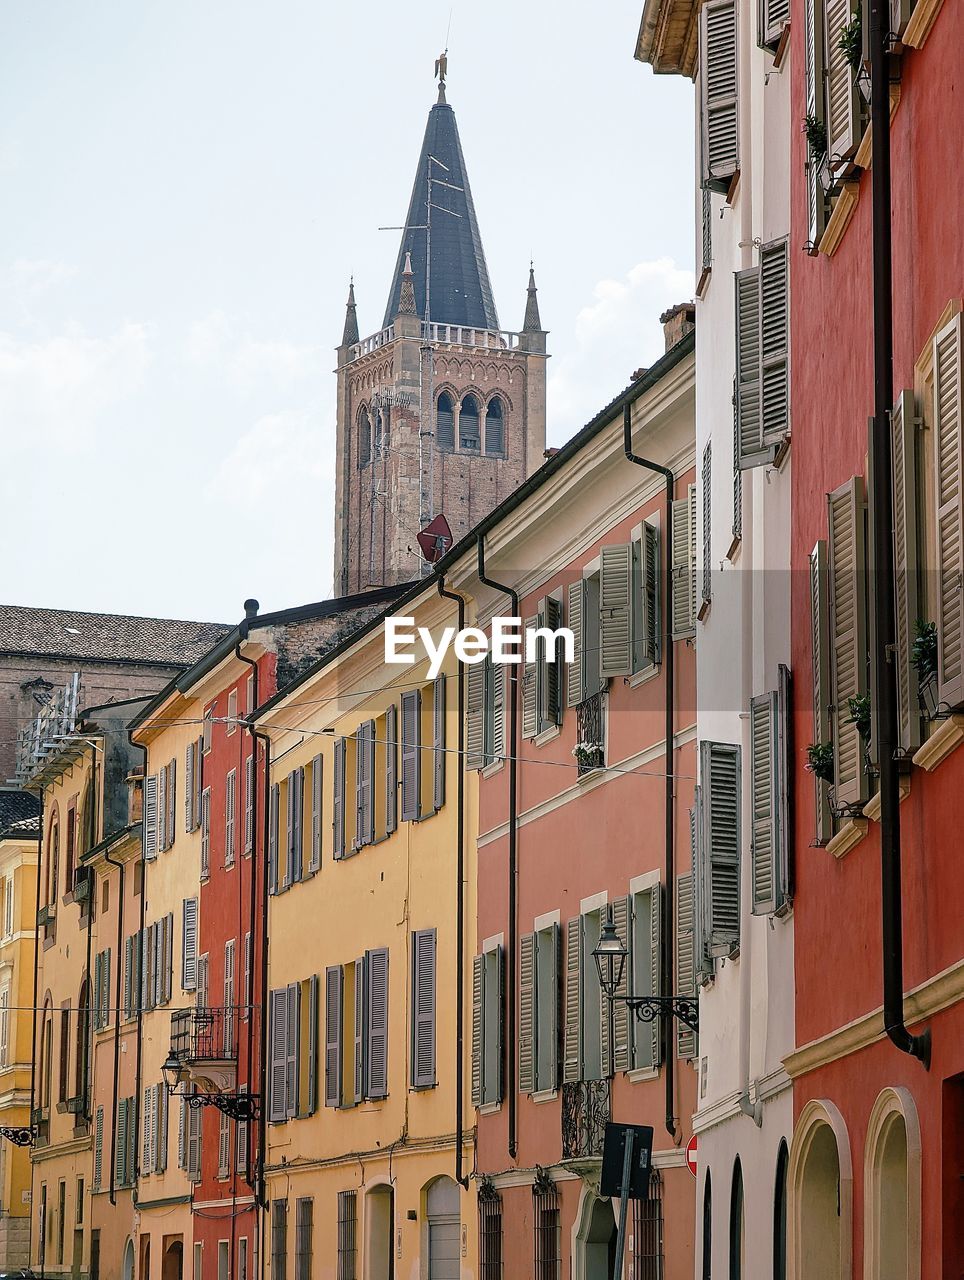 Parma facades